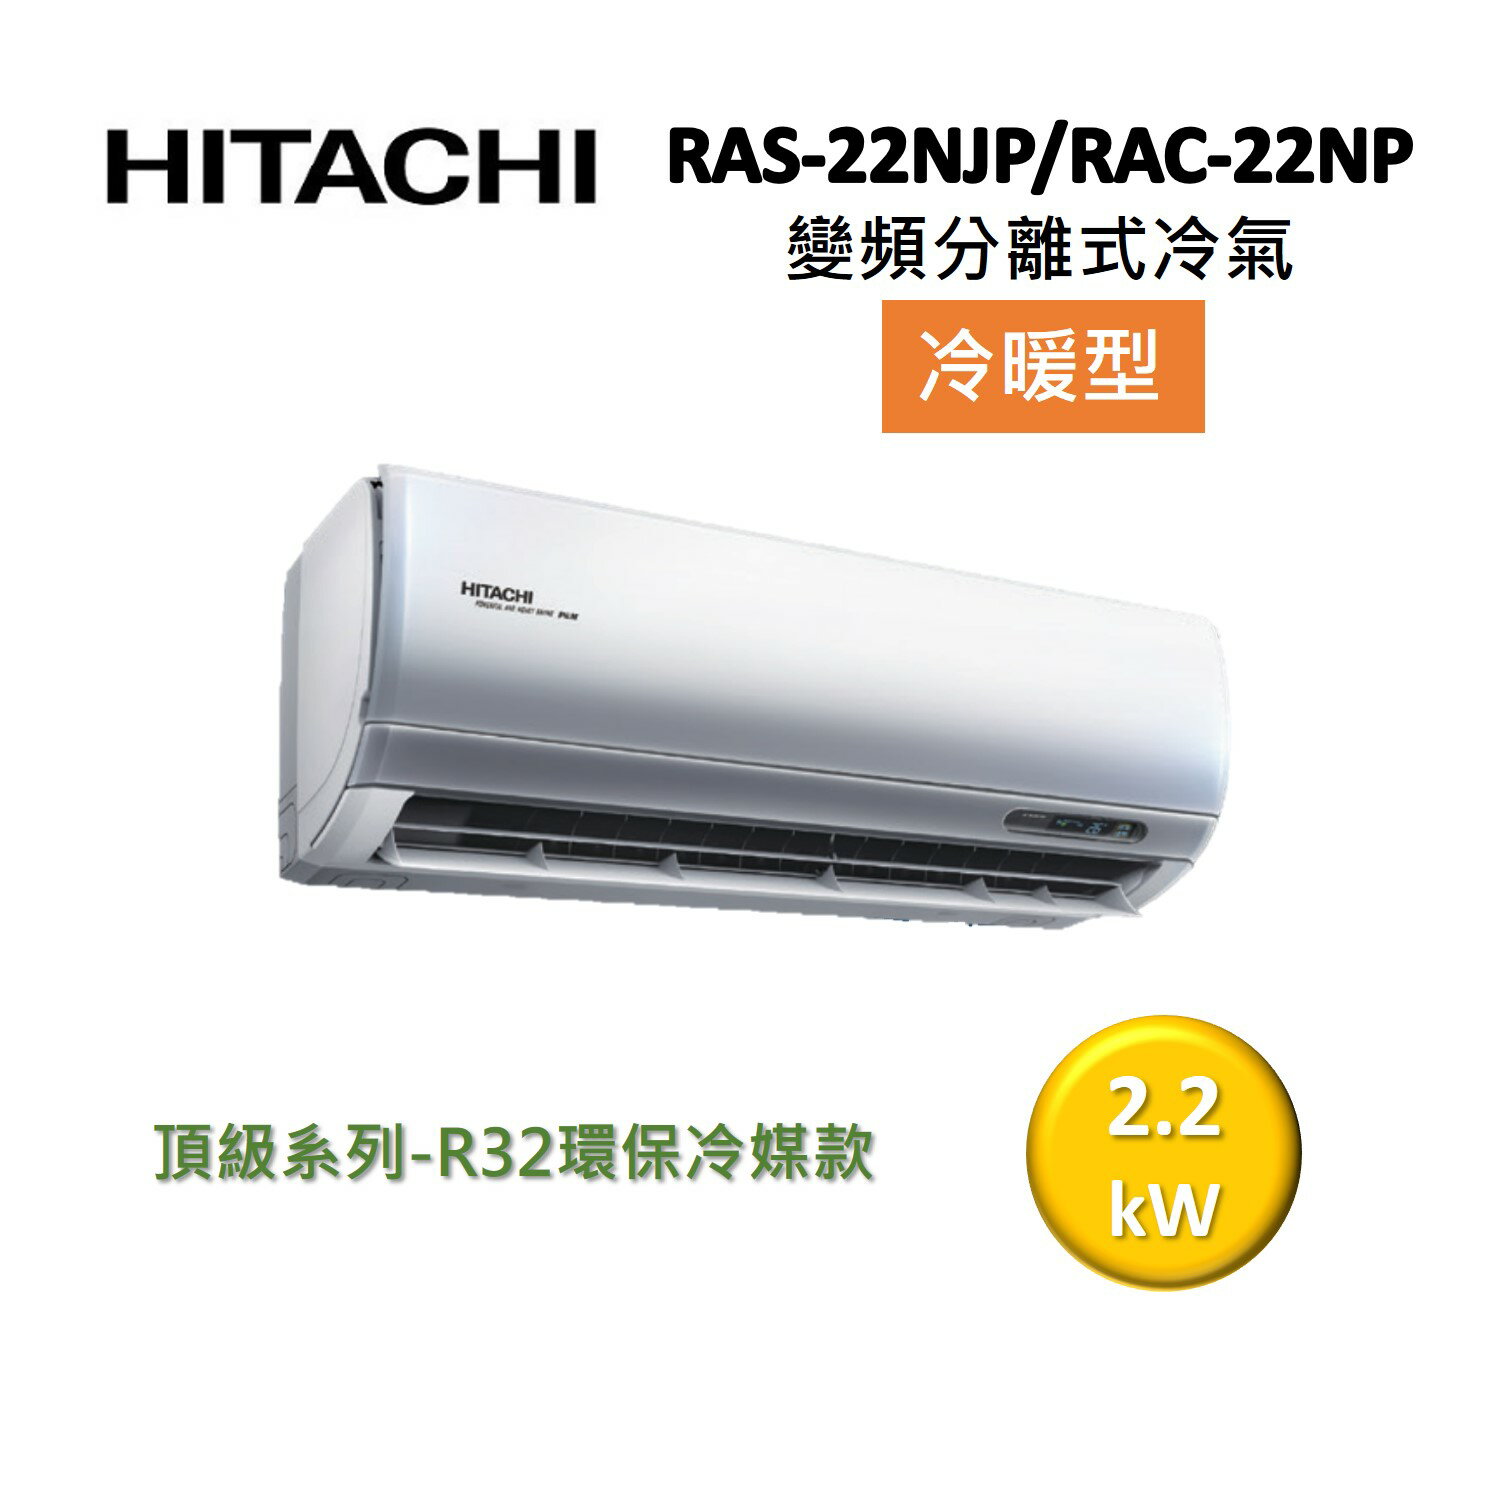 【領券再折+跨店最高22%點數回饋】HITACHI 日立 3-4坪 2.2 KW變頻分離式冷氣-冷暖型 RAS-22NJP/RAC-22NP